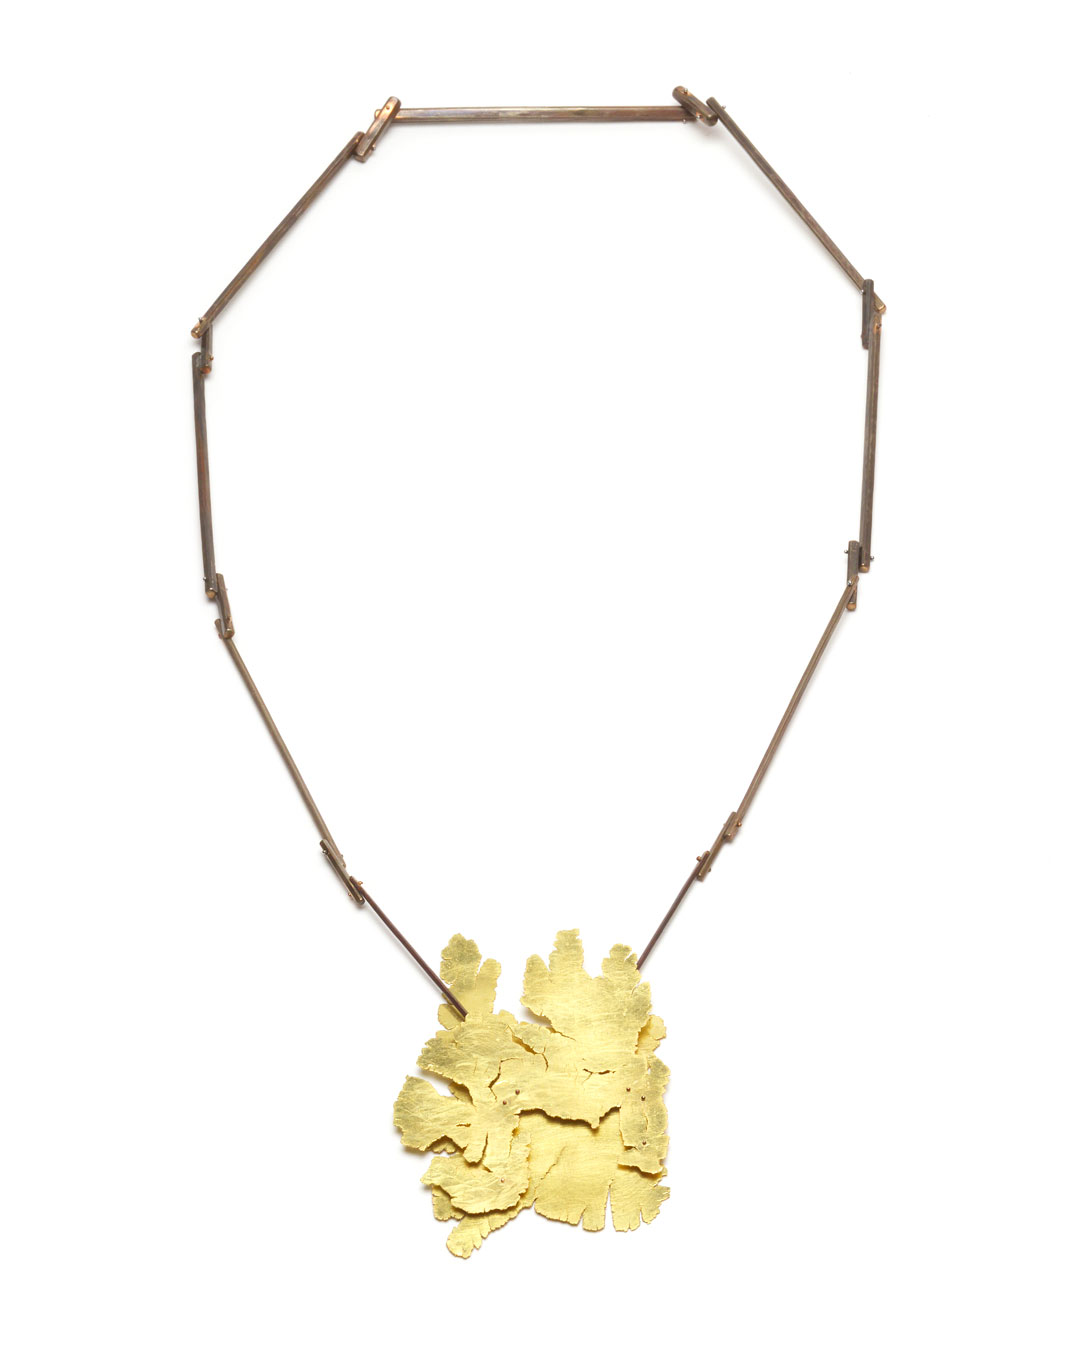 Stefano Marchetti, untitled, 2018, pendant; gold, shibuichi, 430 x 180 x 18 mm, price on request